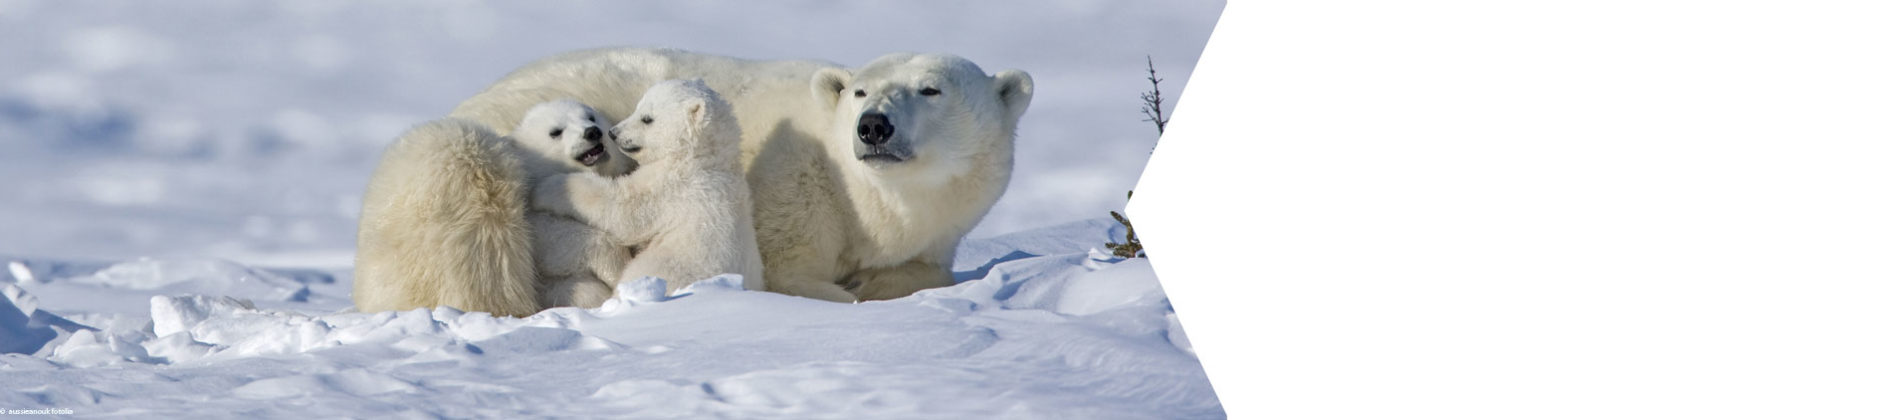 Junge Eisbären hautnah in der Wildnis live erleben.